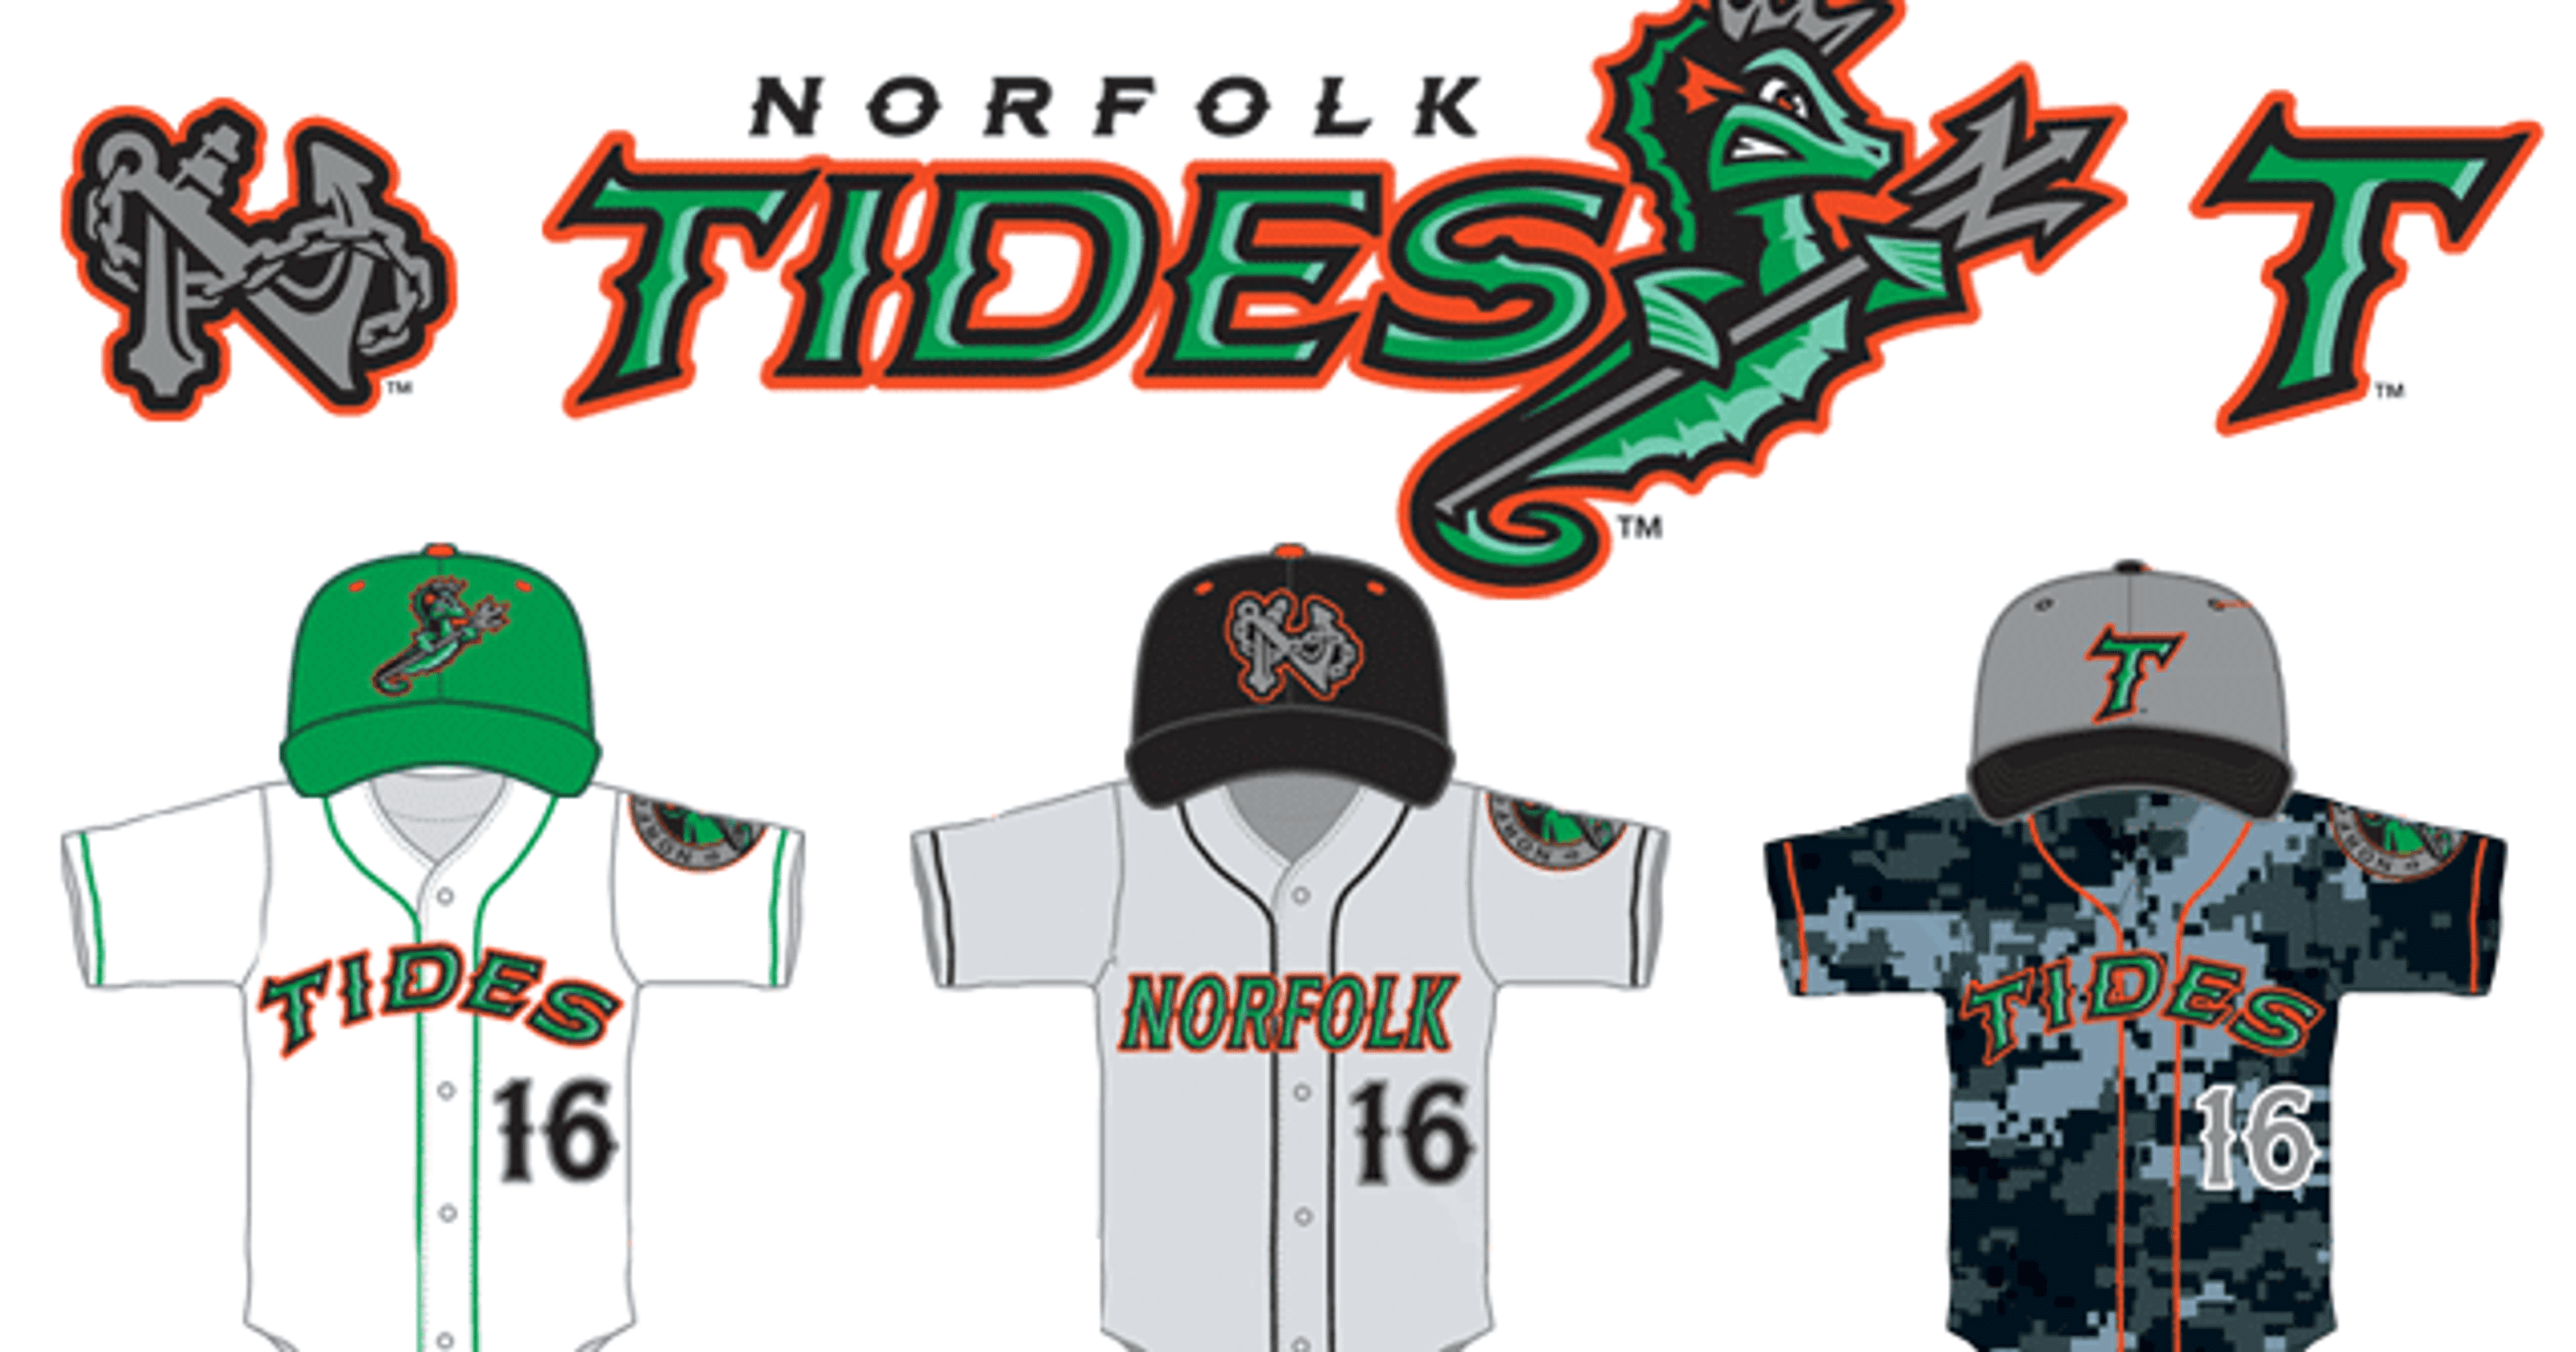 Norfolk Tides Logo - Norfolk Tides miss the mark with rebranding blunder